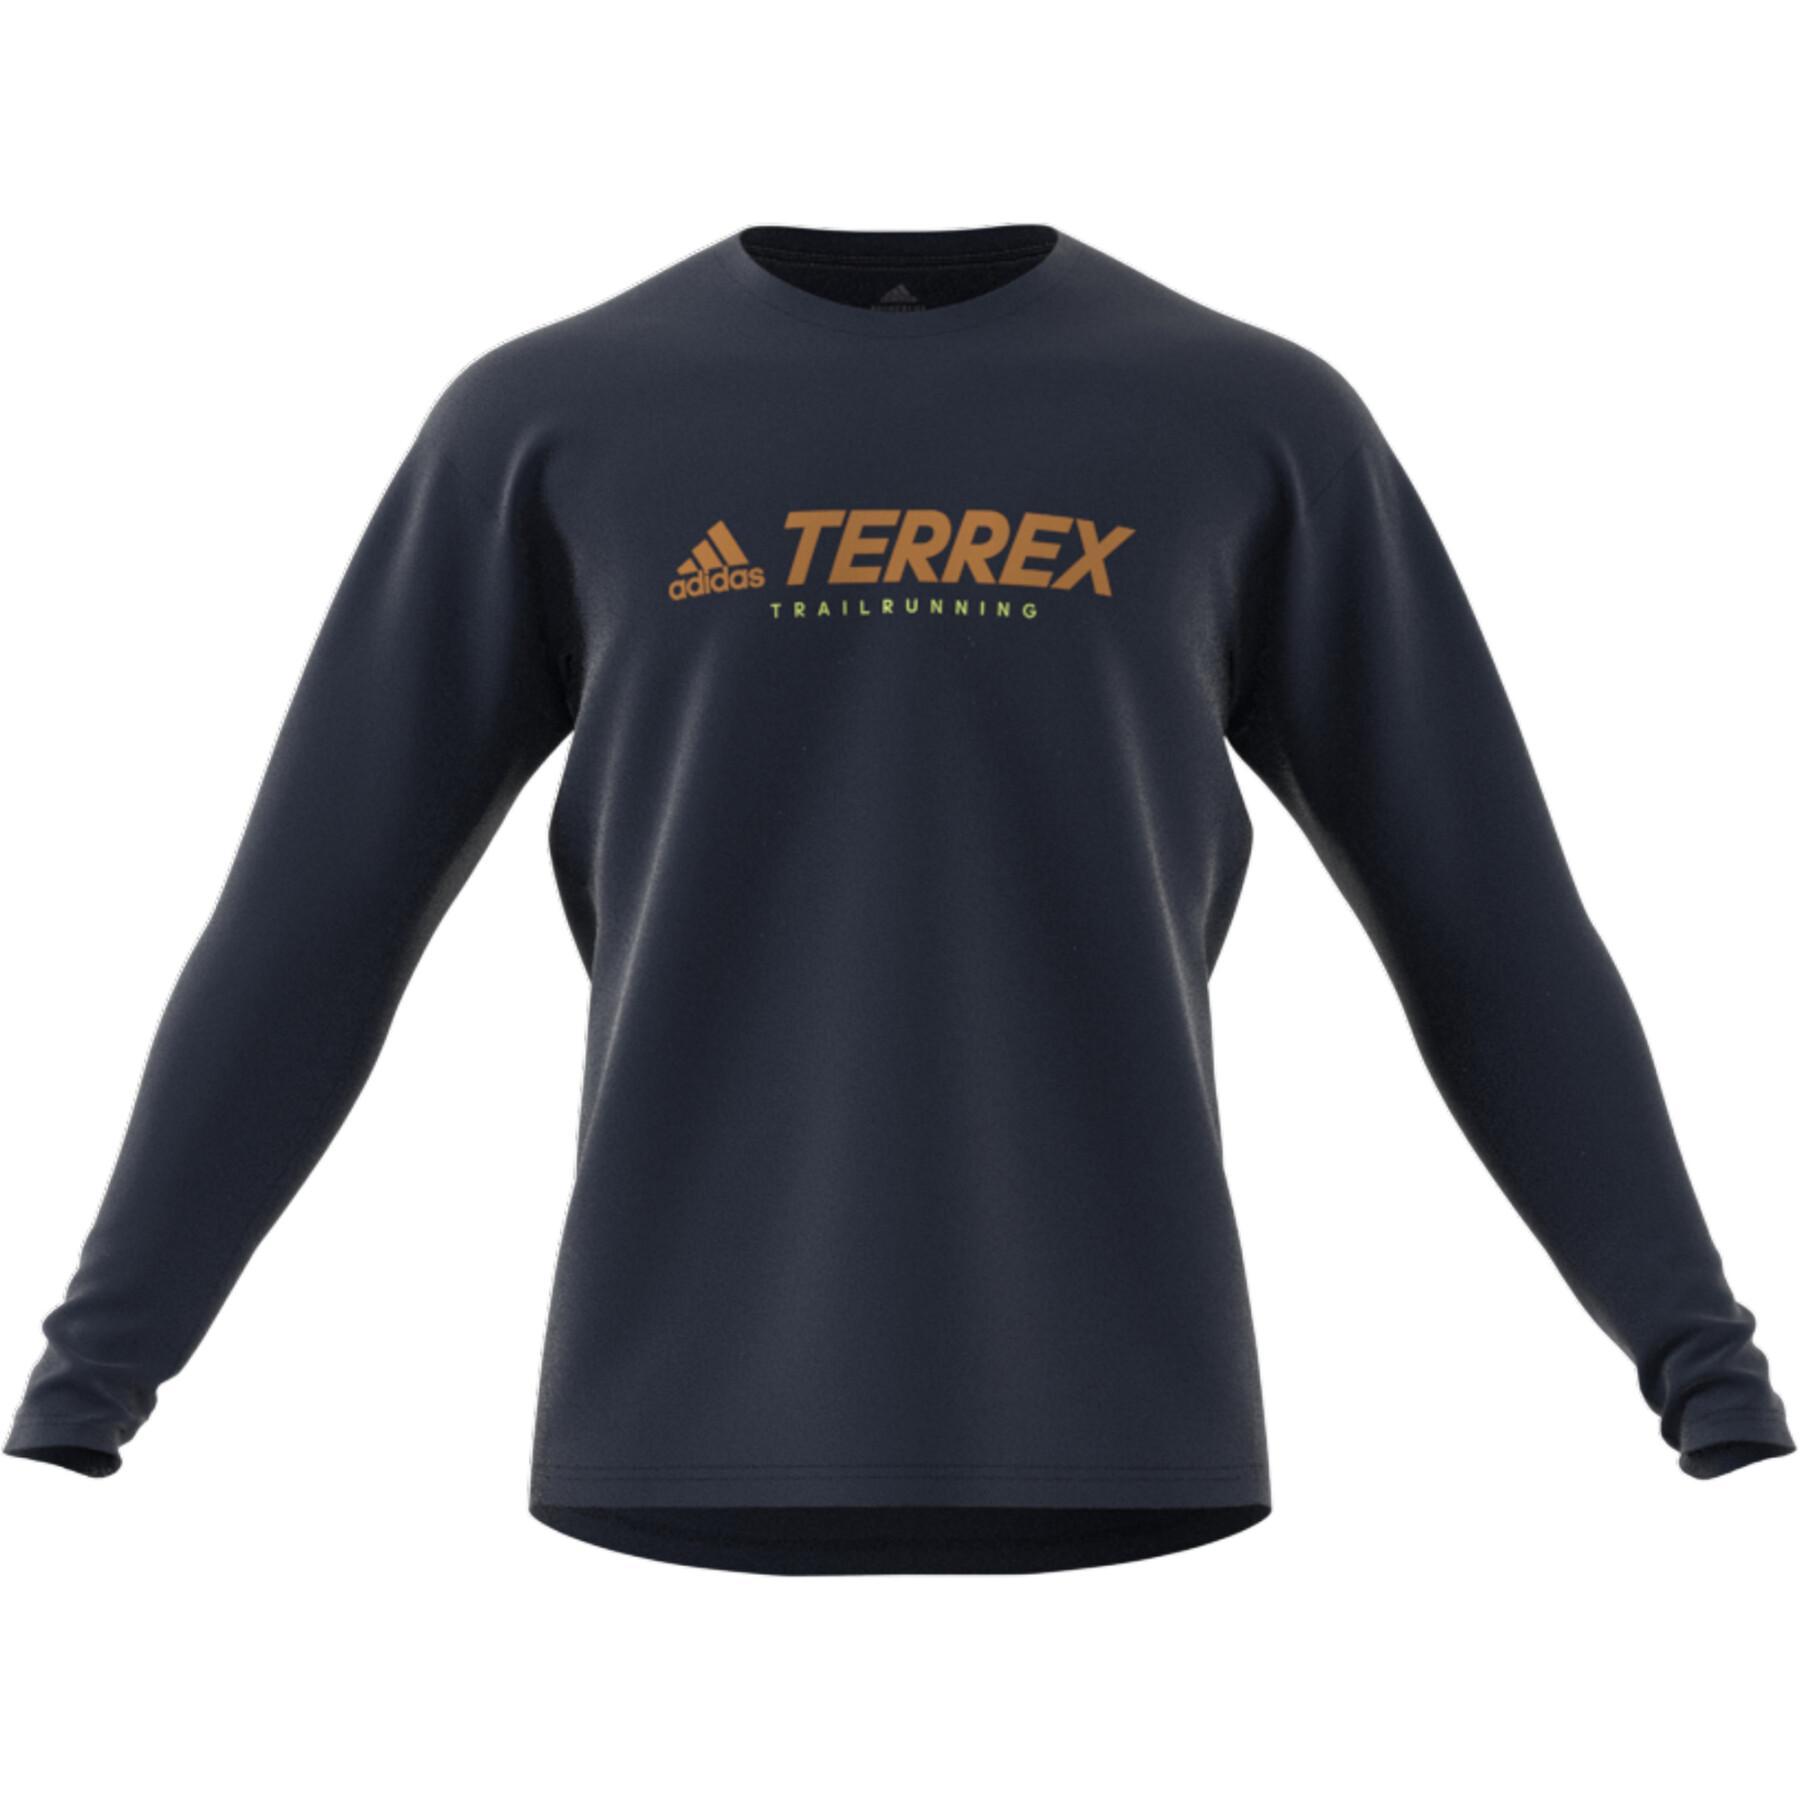 T-shirt adidas Terrex Primeblue Trail